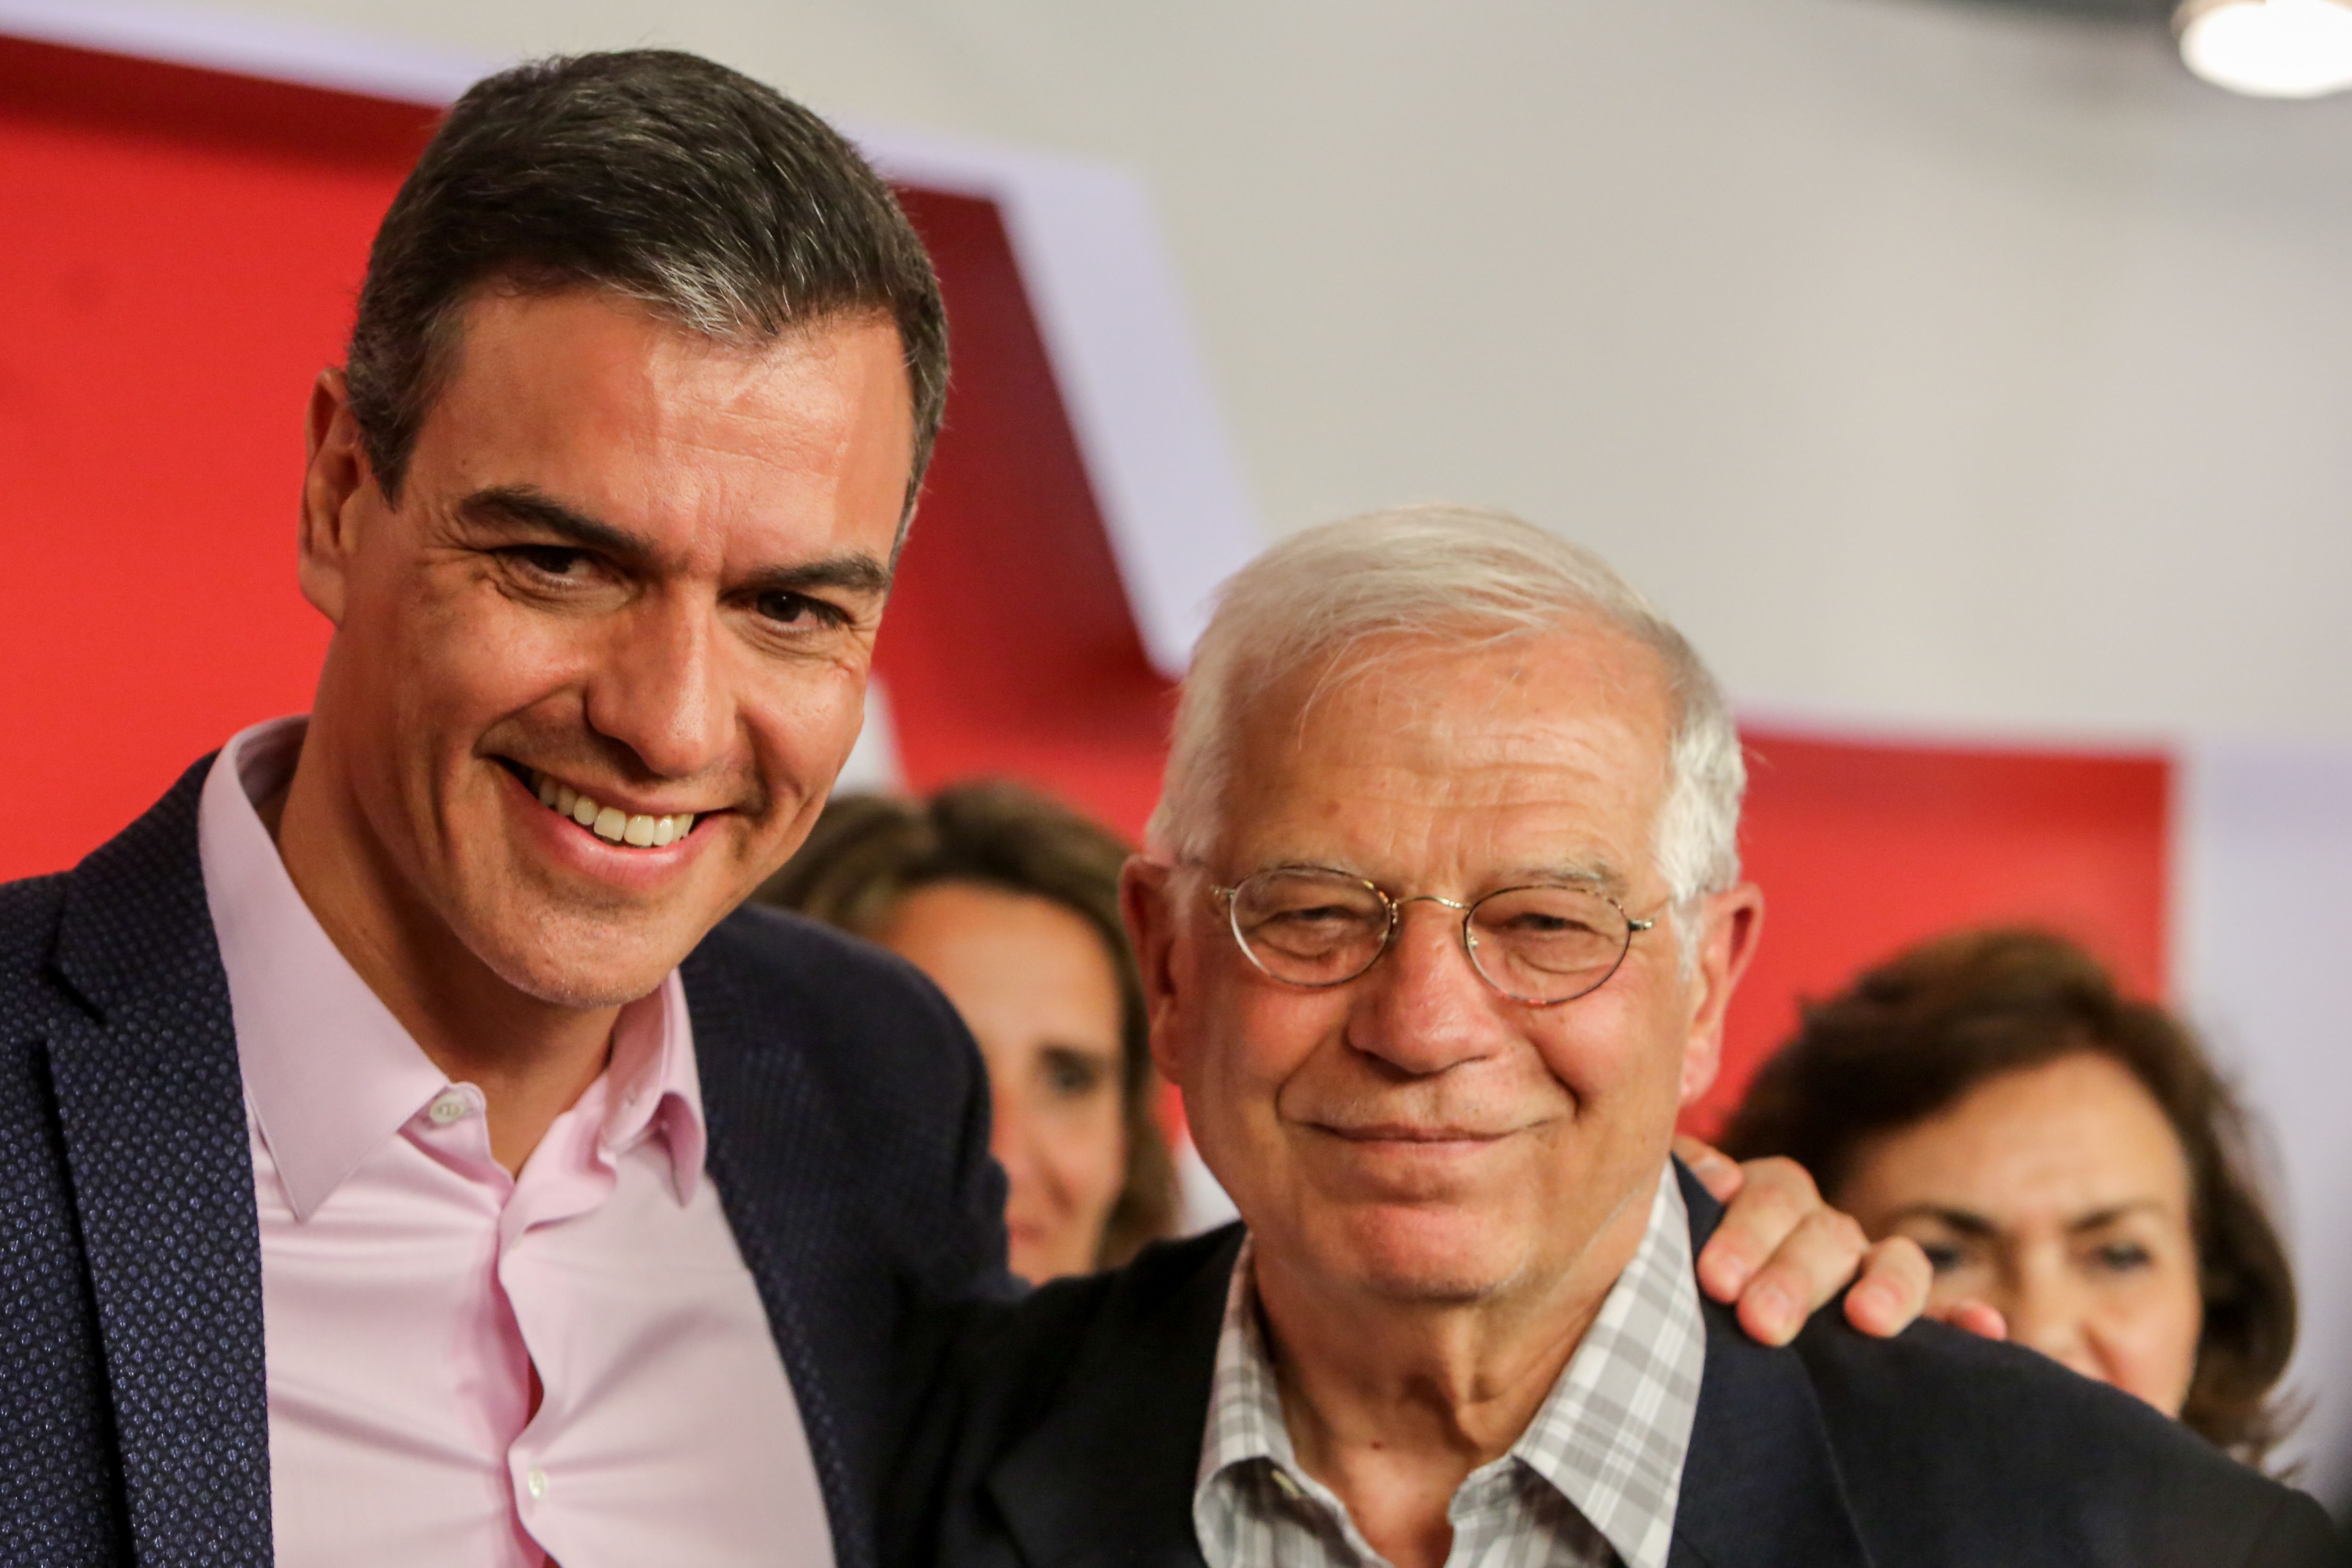 El presidente del Gobierno en funciones Pedro Sánchez y el cabeza de lista del PSOE al Parlamento Europeo Josep Borrell  tras conocerse los resultados de los comicios europeos que otorgan la victoria al Partido Socialis